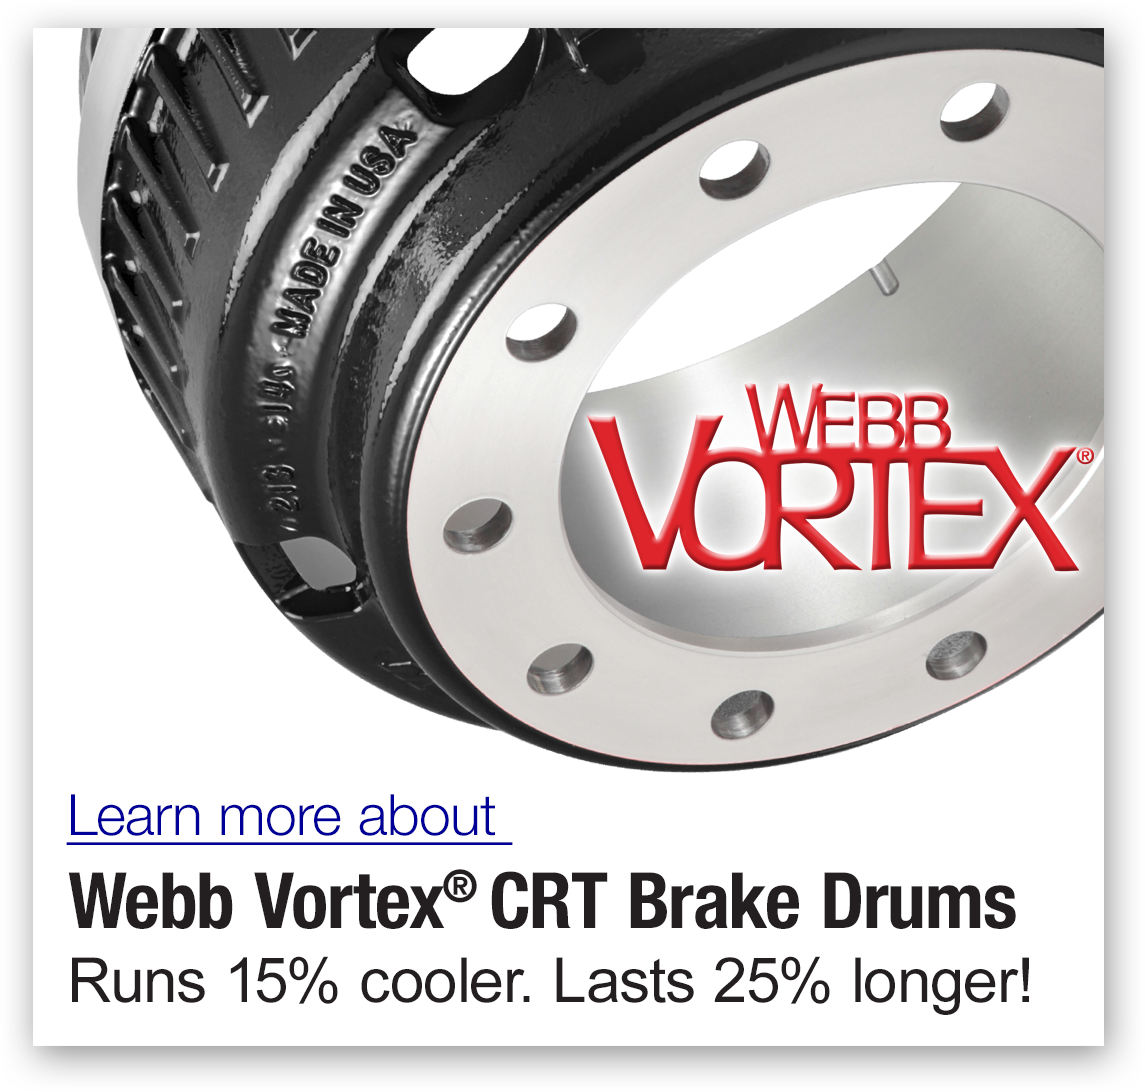 Webb Vortex brake drums